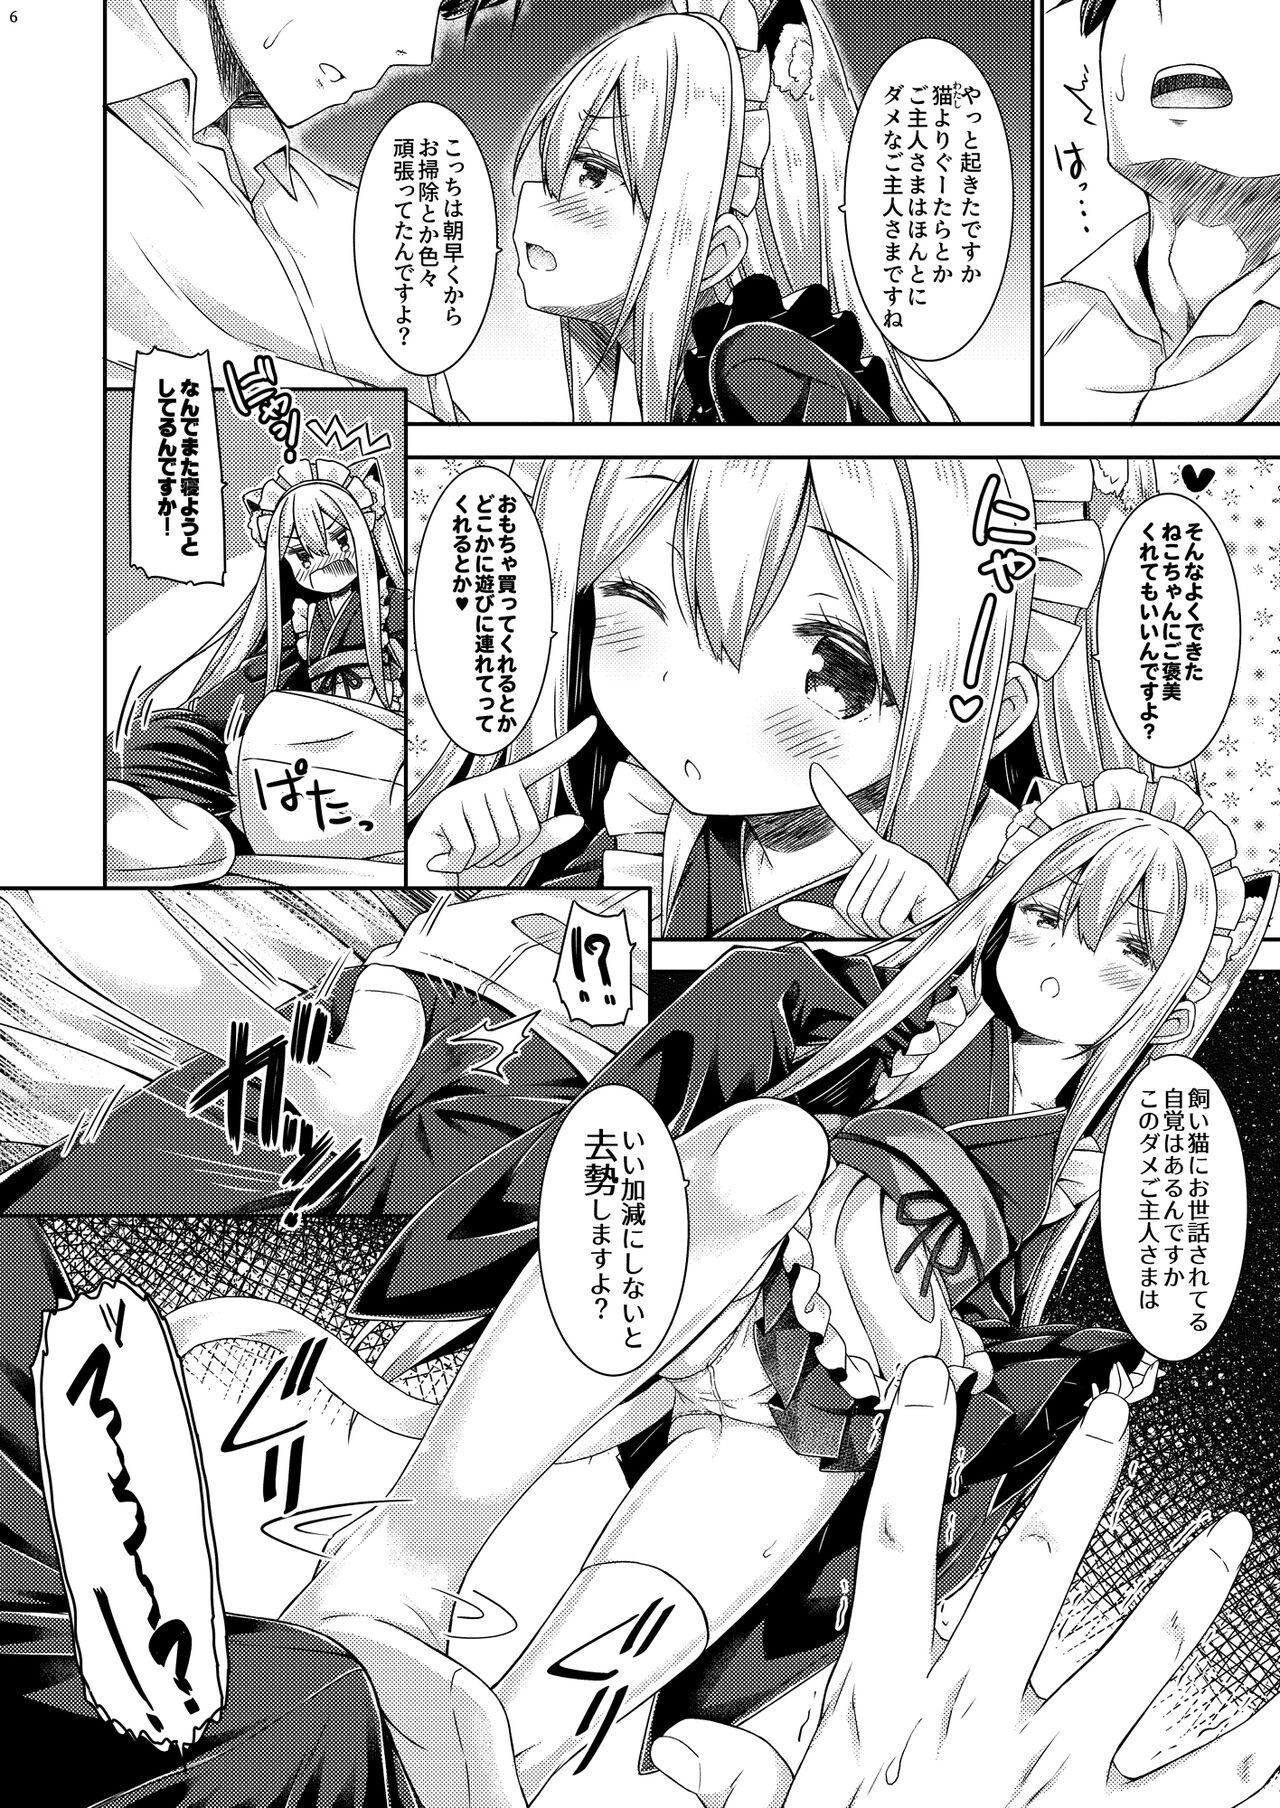 Parties Anata no Neko-chan Maid. Butt Plug - Page 7